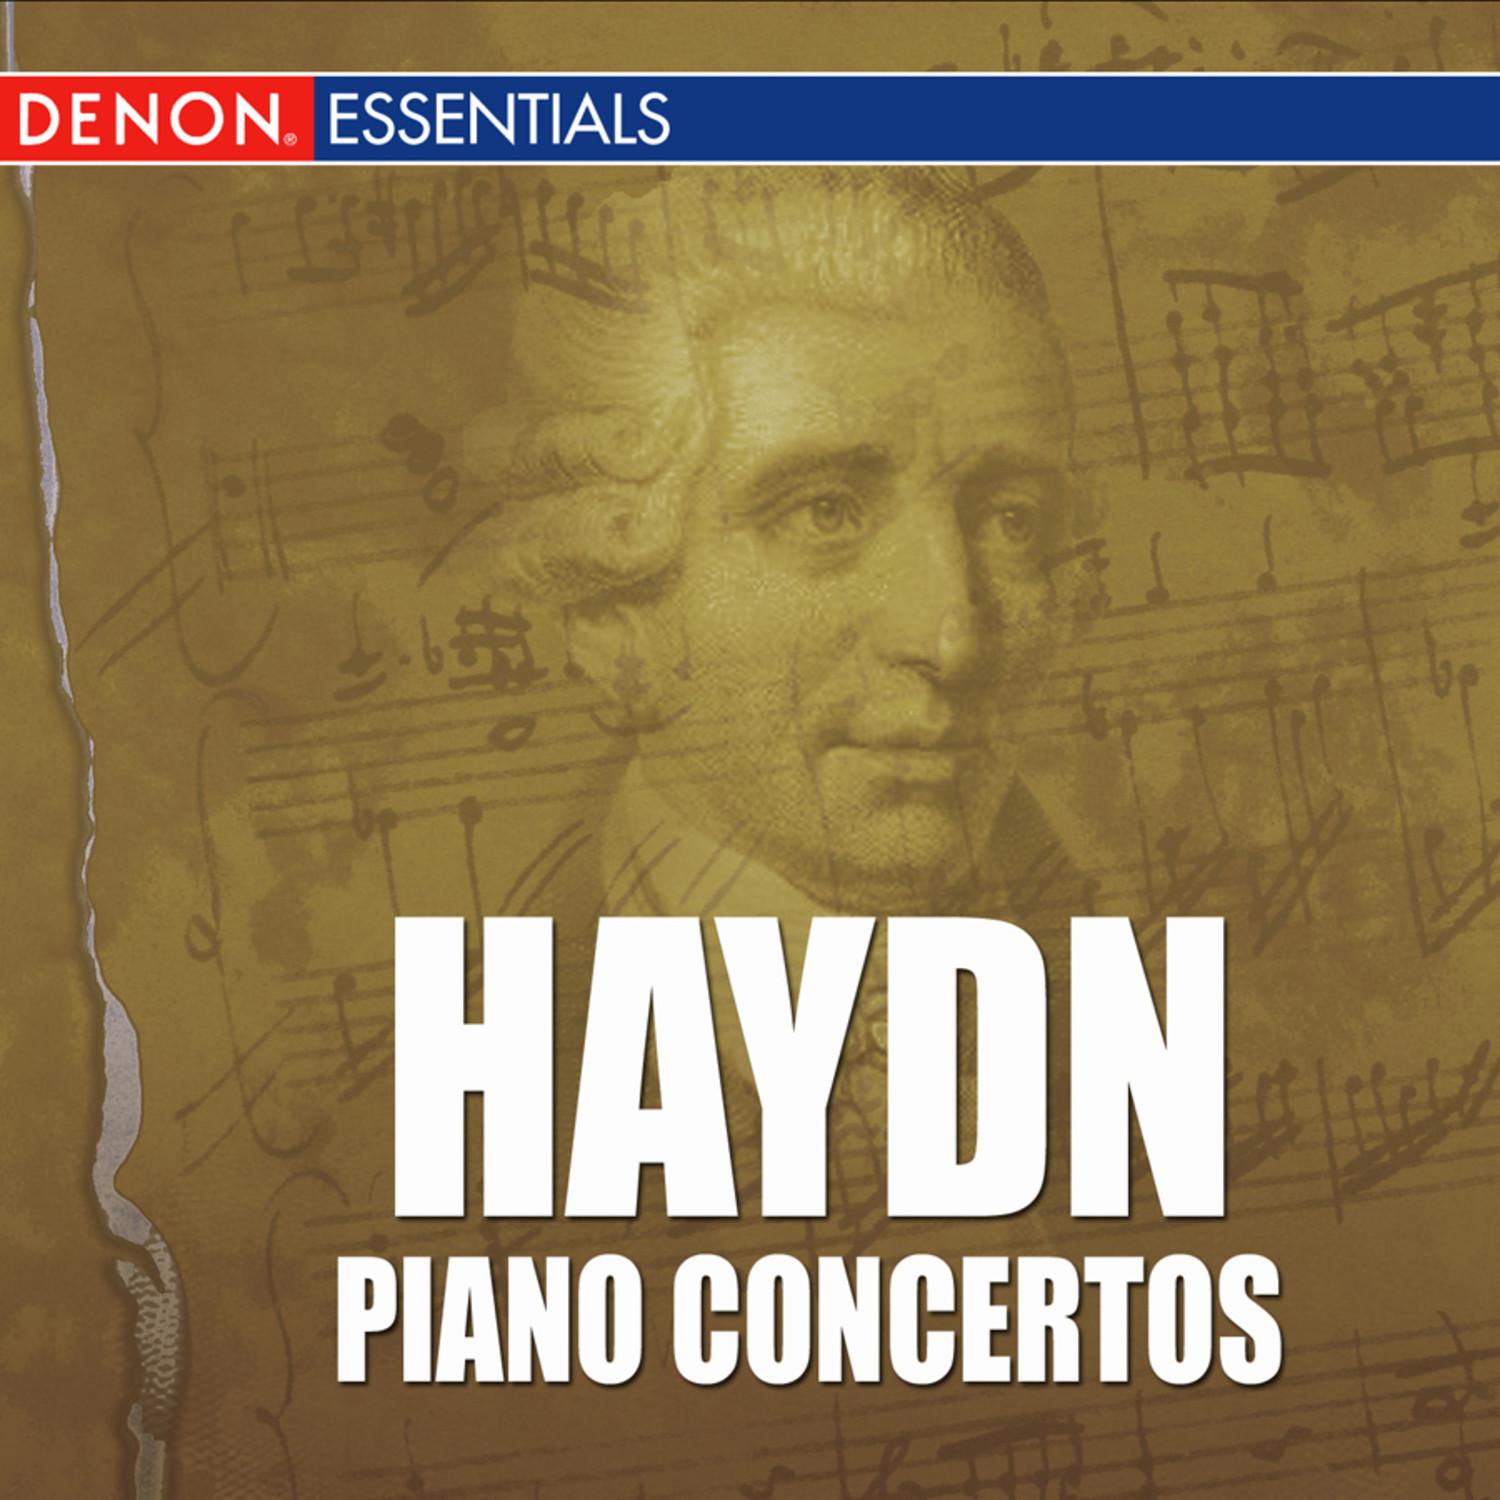 Concerto for Piano & Orchestra No. 4 in G Major, Hob. XVIII:4: II. Adagio cantabile